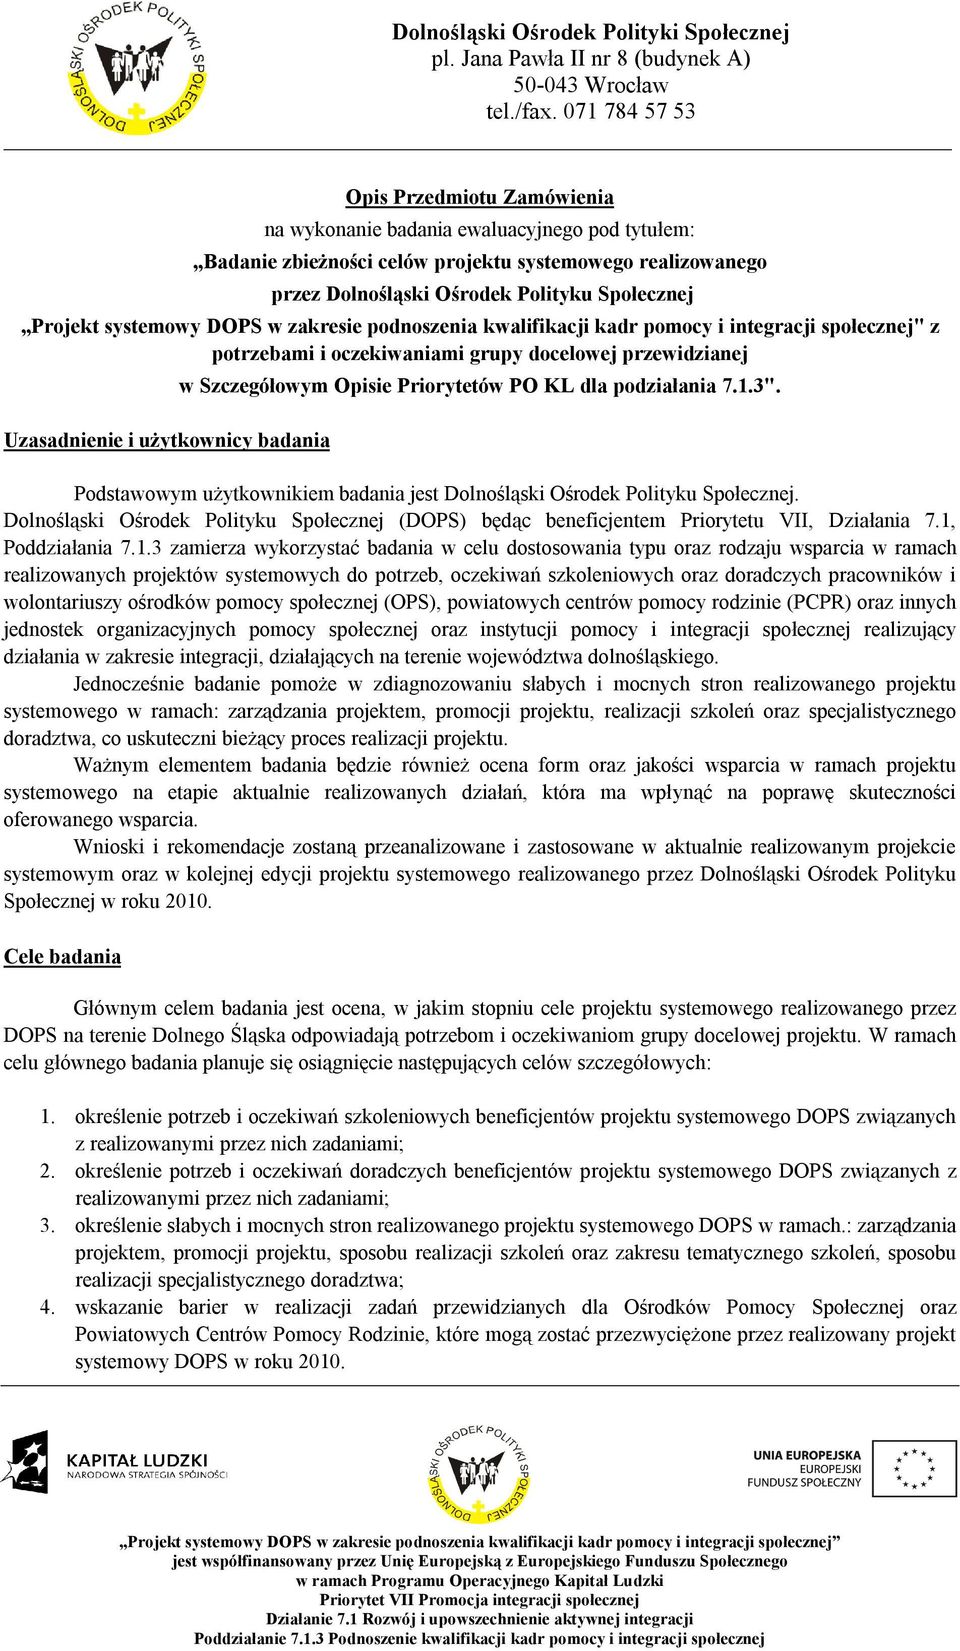 Priorytetów PO KL dla podziałania 7.1.3". Podstawowym użytkownikiem badania jest Dolnośląski Ośrodek Polityku Społecznej.